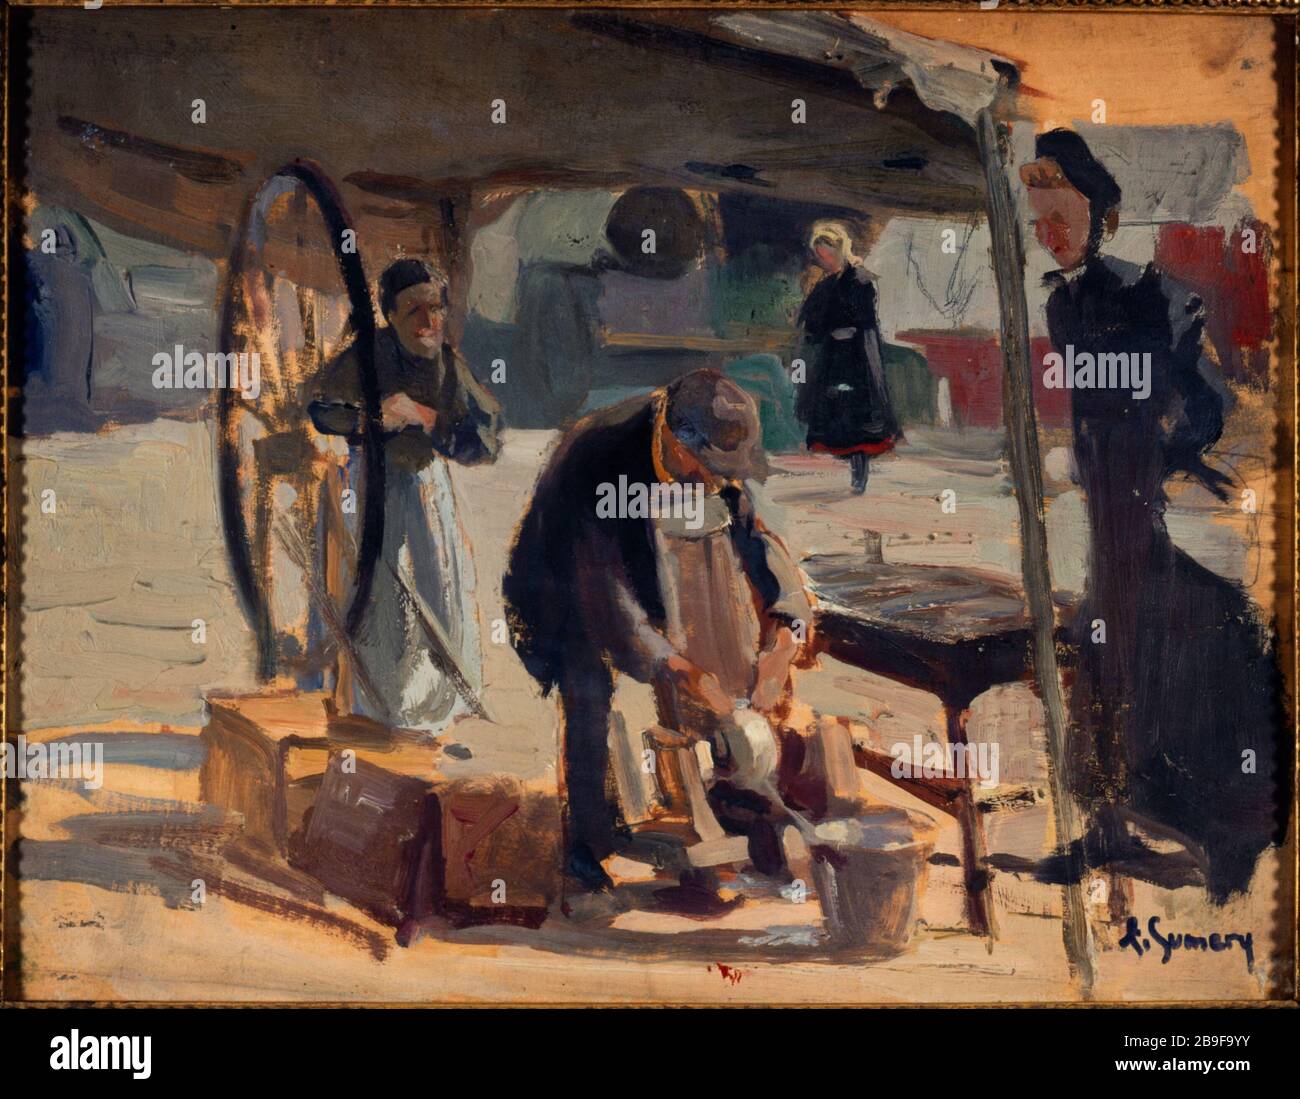 Macinacaffè in Passy Adolphe-Ernest Gumery (1861-1943). Rémouleur à Passy. Huile sur bois. 1890. Parigi, musée Carnavalet. Foto Stock